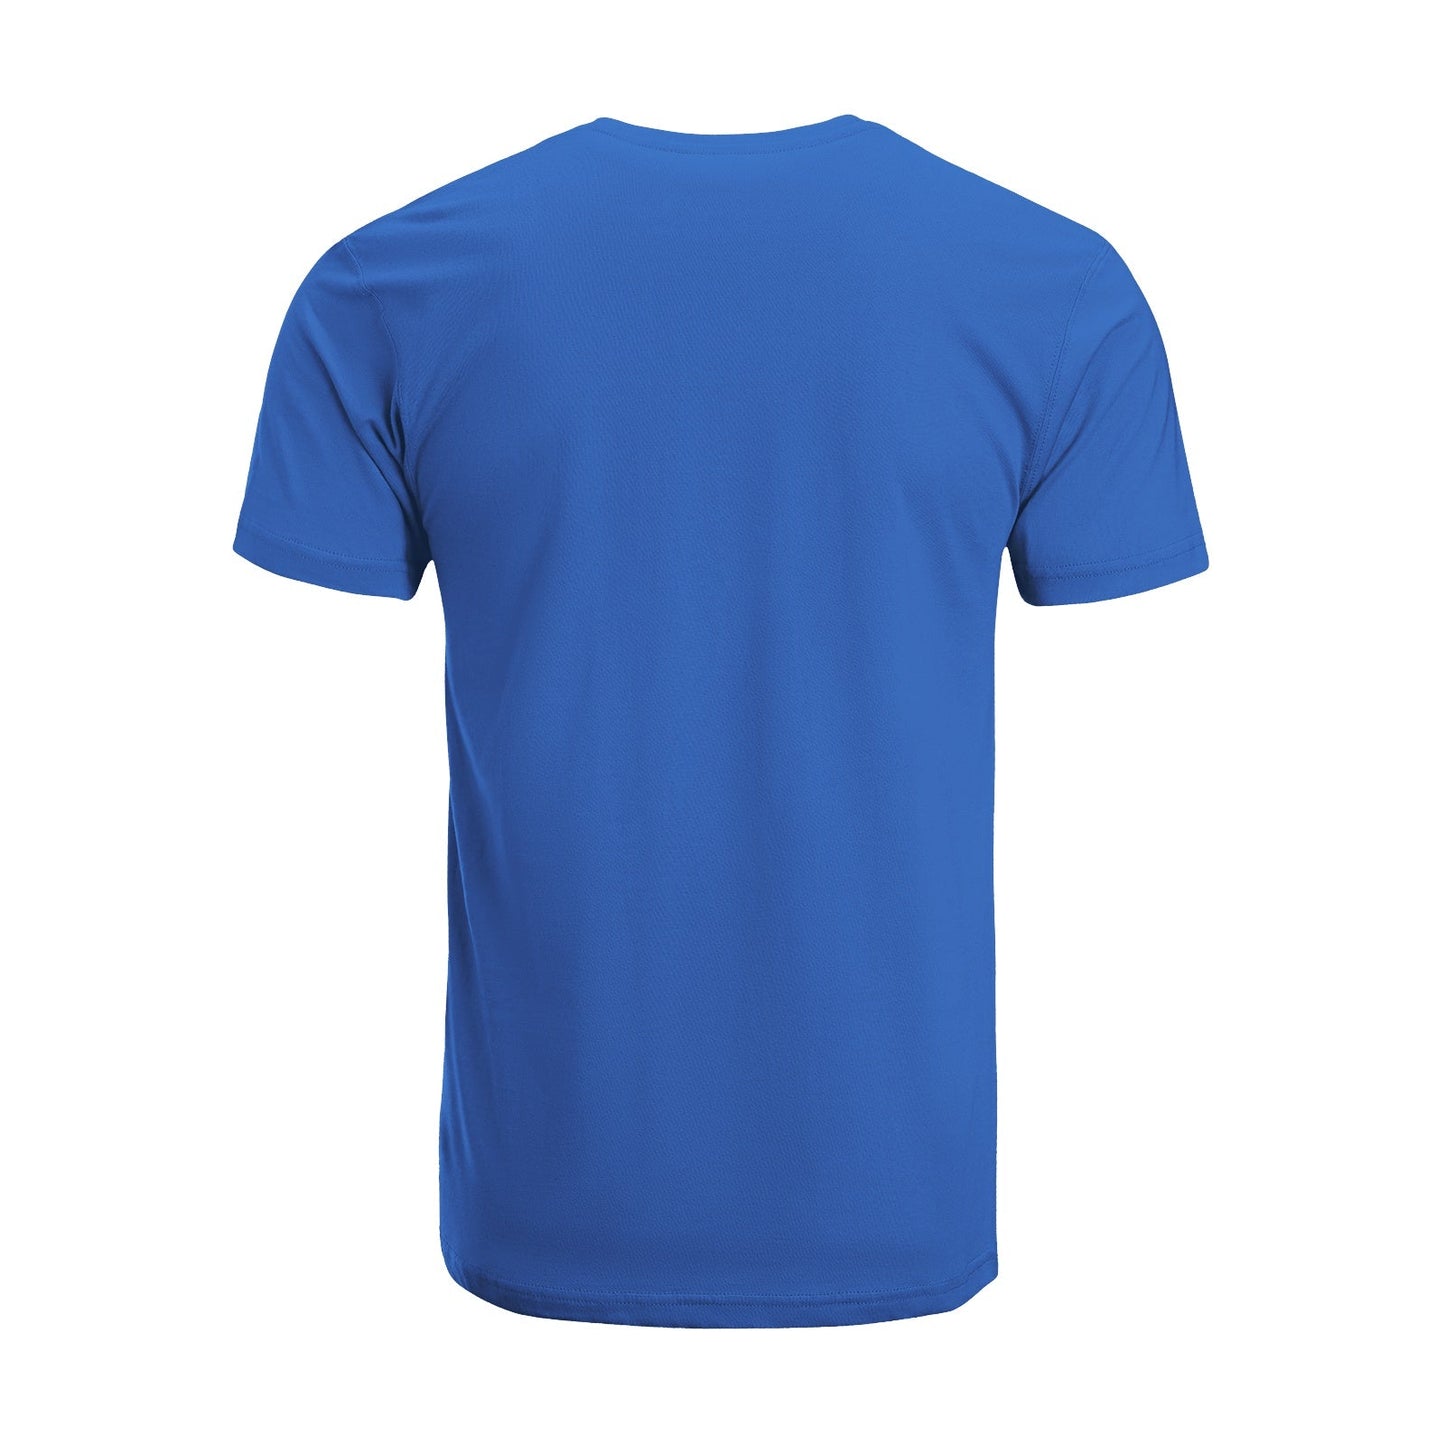 Unisex Short Sleeve Crew Neck Cotton Jersey T-Shirt TRUCK 11